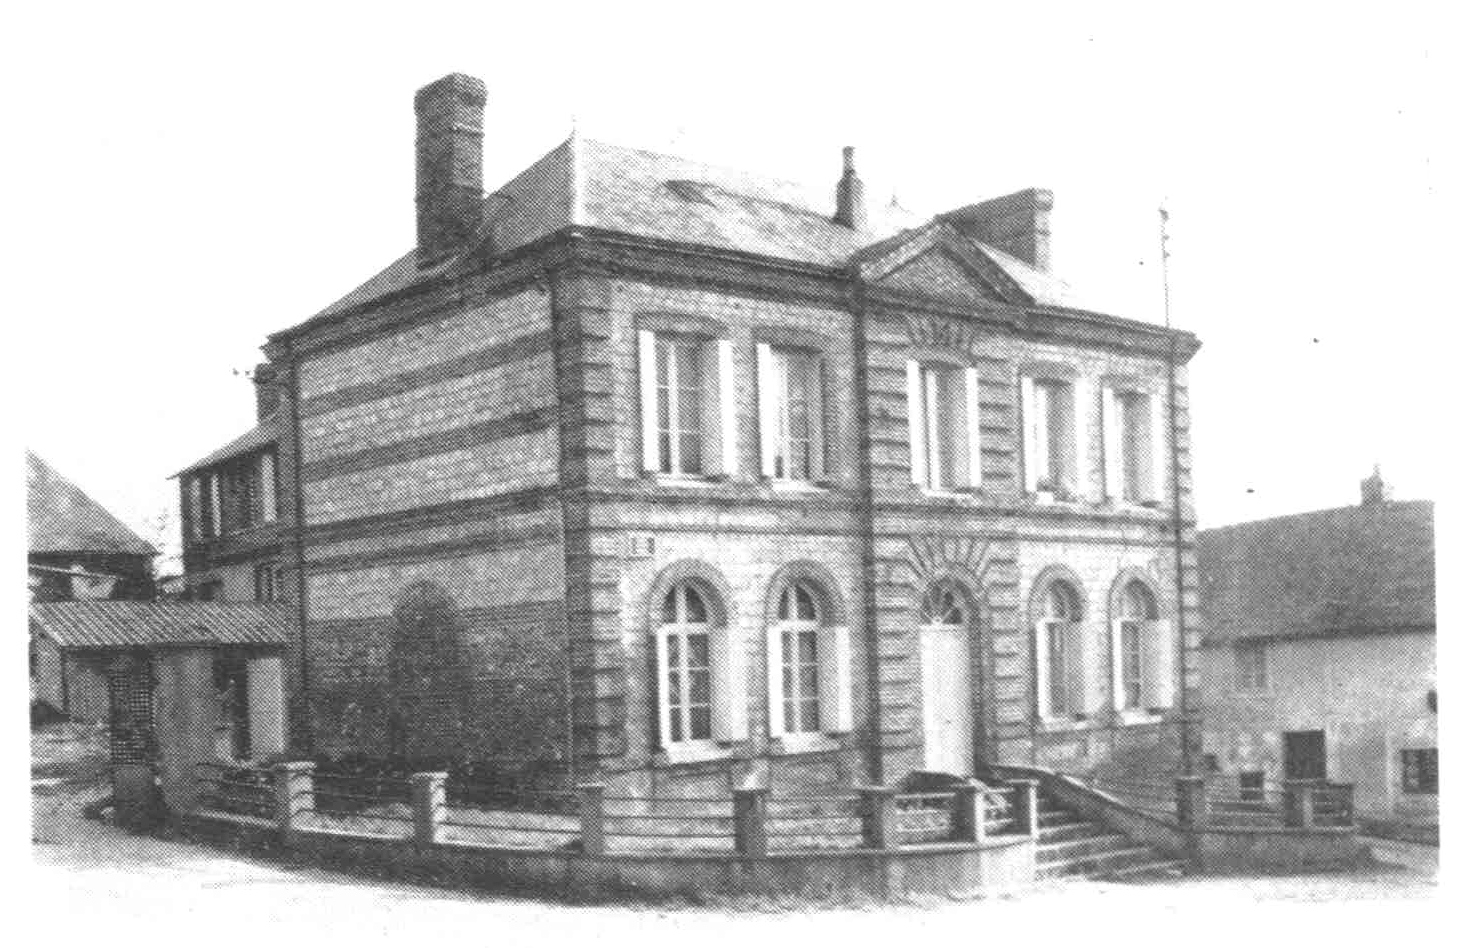 ancienne mairie et ancienne construite en 1865 et école place octave pestel en 1912 une école est construite dans la cour derrière la mairie